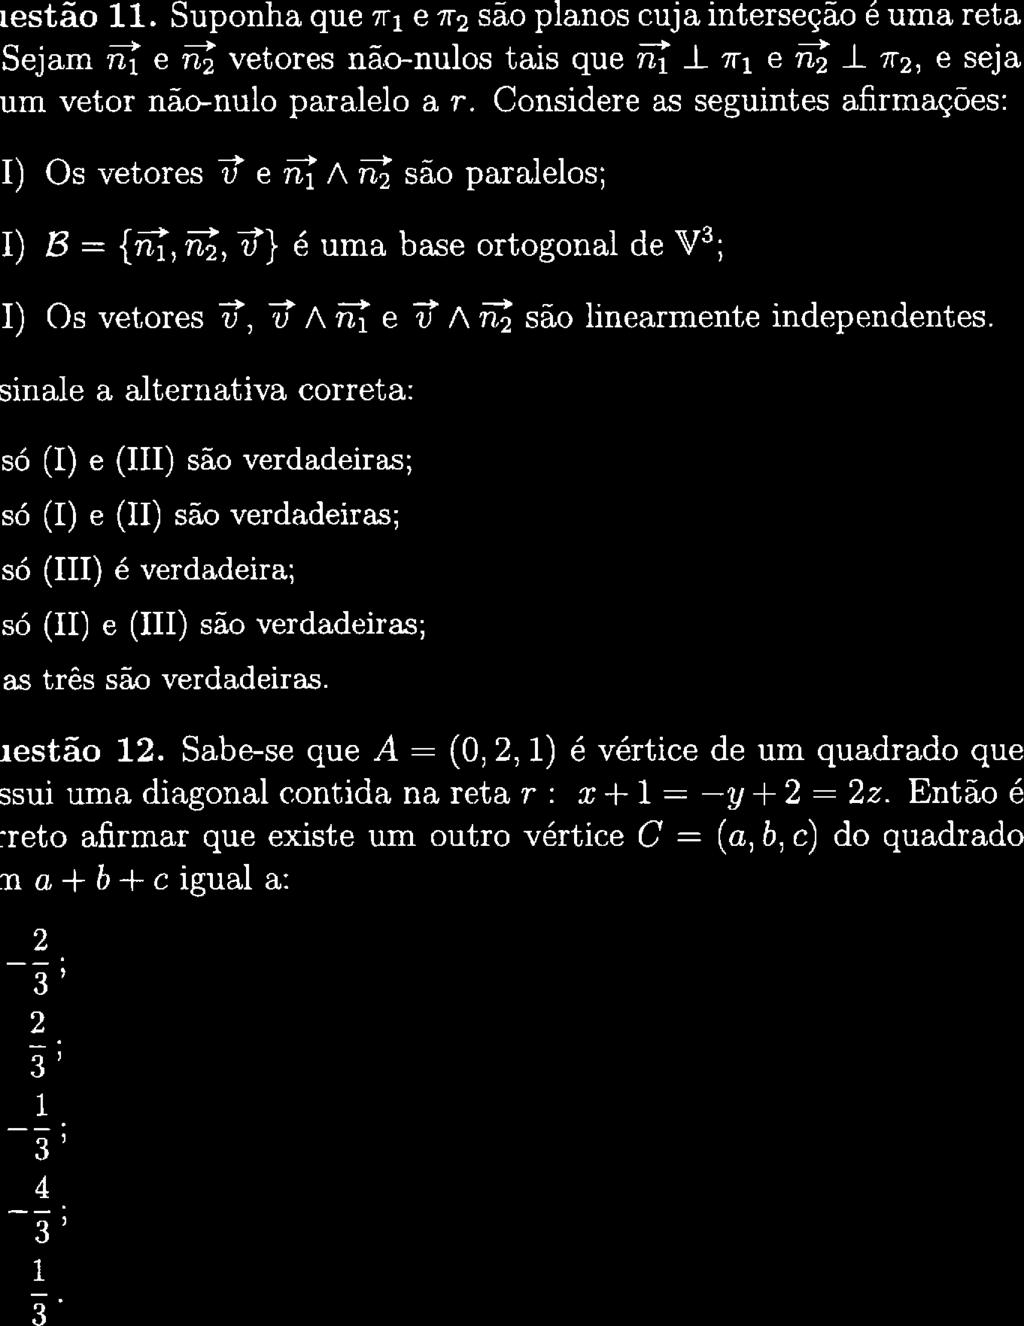 @ # festão ll. Suponha que ai e a são planos cuja interseção é uma reta Sejam i8 e i8 vetores nã.c-nulos tais que ié l n-i e i8 J. a, e seja um vetar não-nulo paralelo a r.